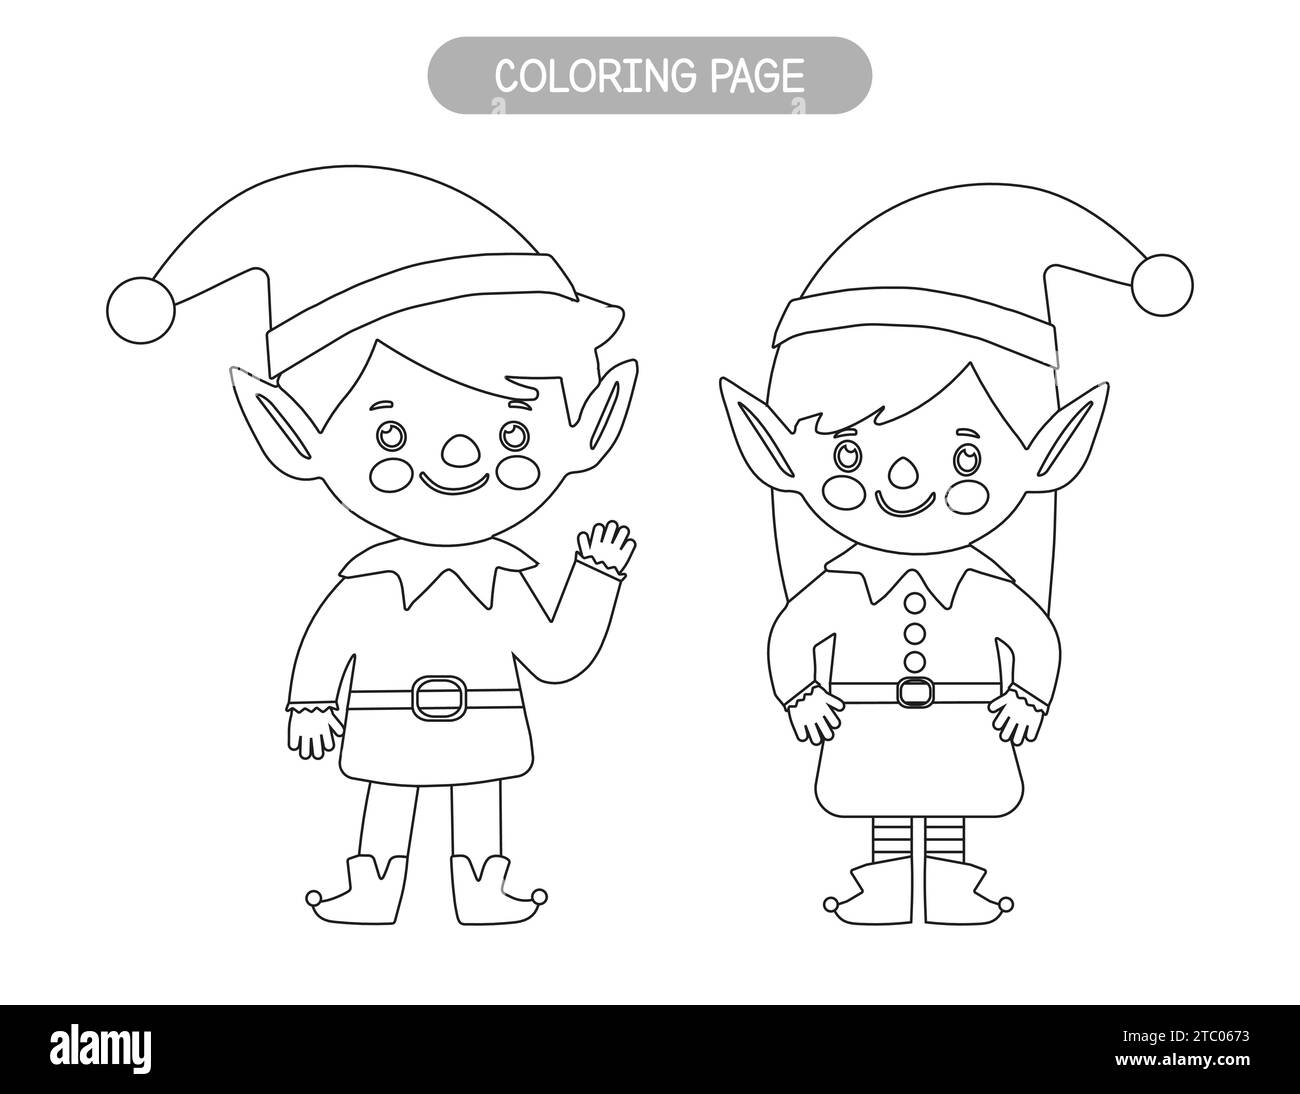 Coloriage de Noël. Coloriage elfes mignon pour les enfants. Jeu éducatif pour la saison de Noël Illustration de Vecteur